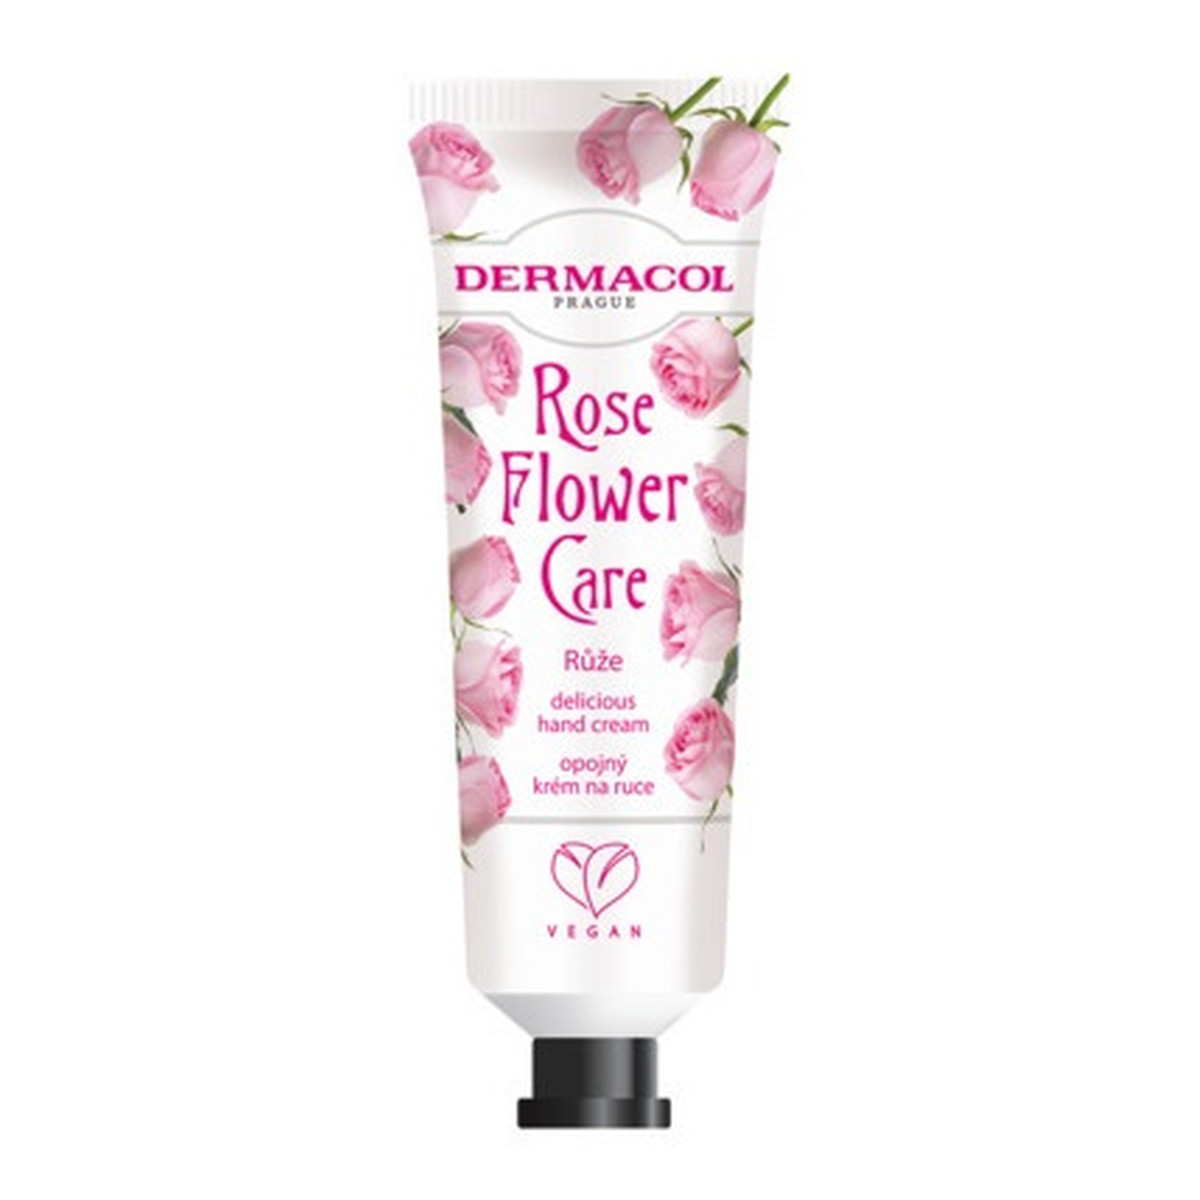 Dermacol Flower Care Delicious Hand Cream Krem do rąk rose 30ml